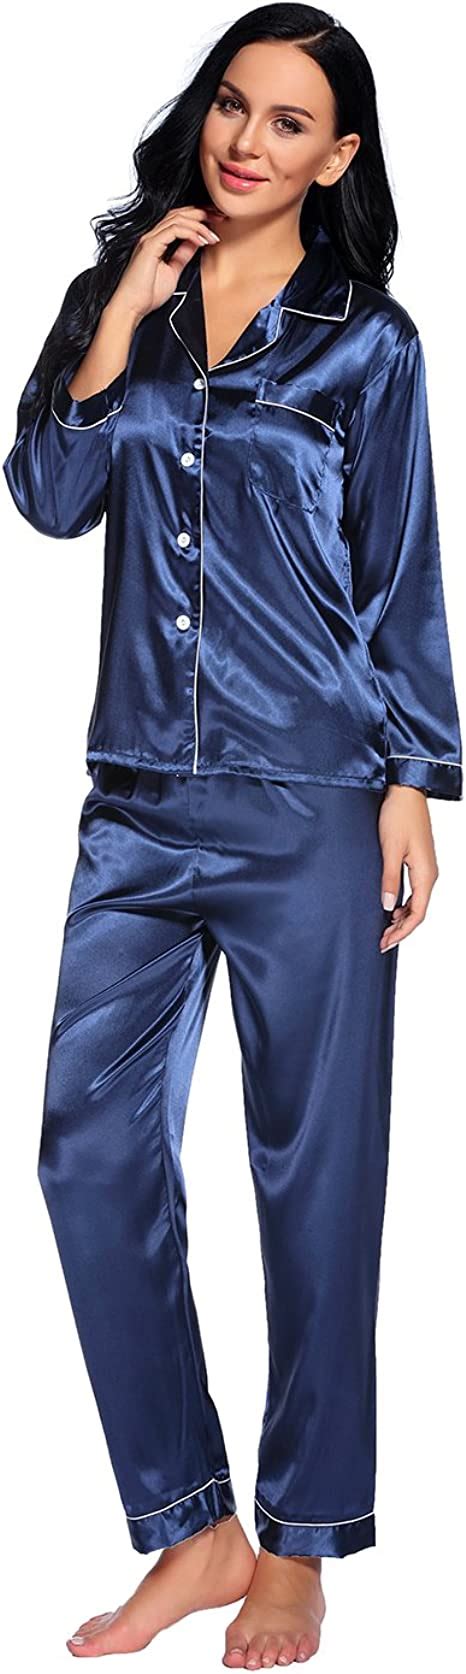 Binken Damen Satin Pyjama Set Schlafanzug Nachthemd Xl Navy Blue Amazonde Bekleidung